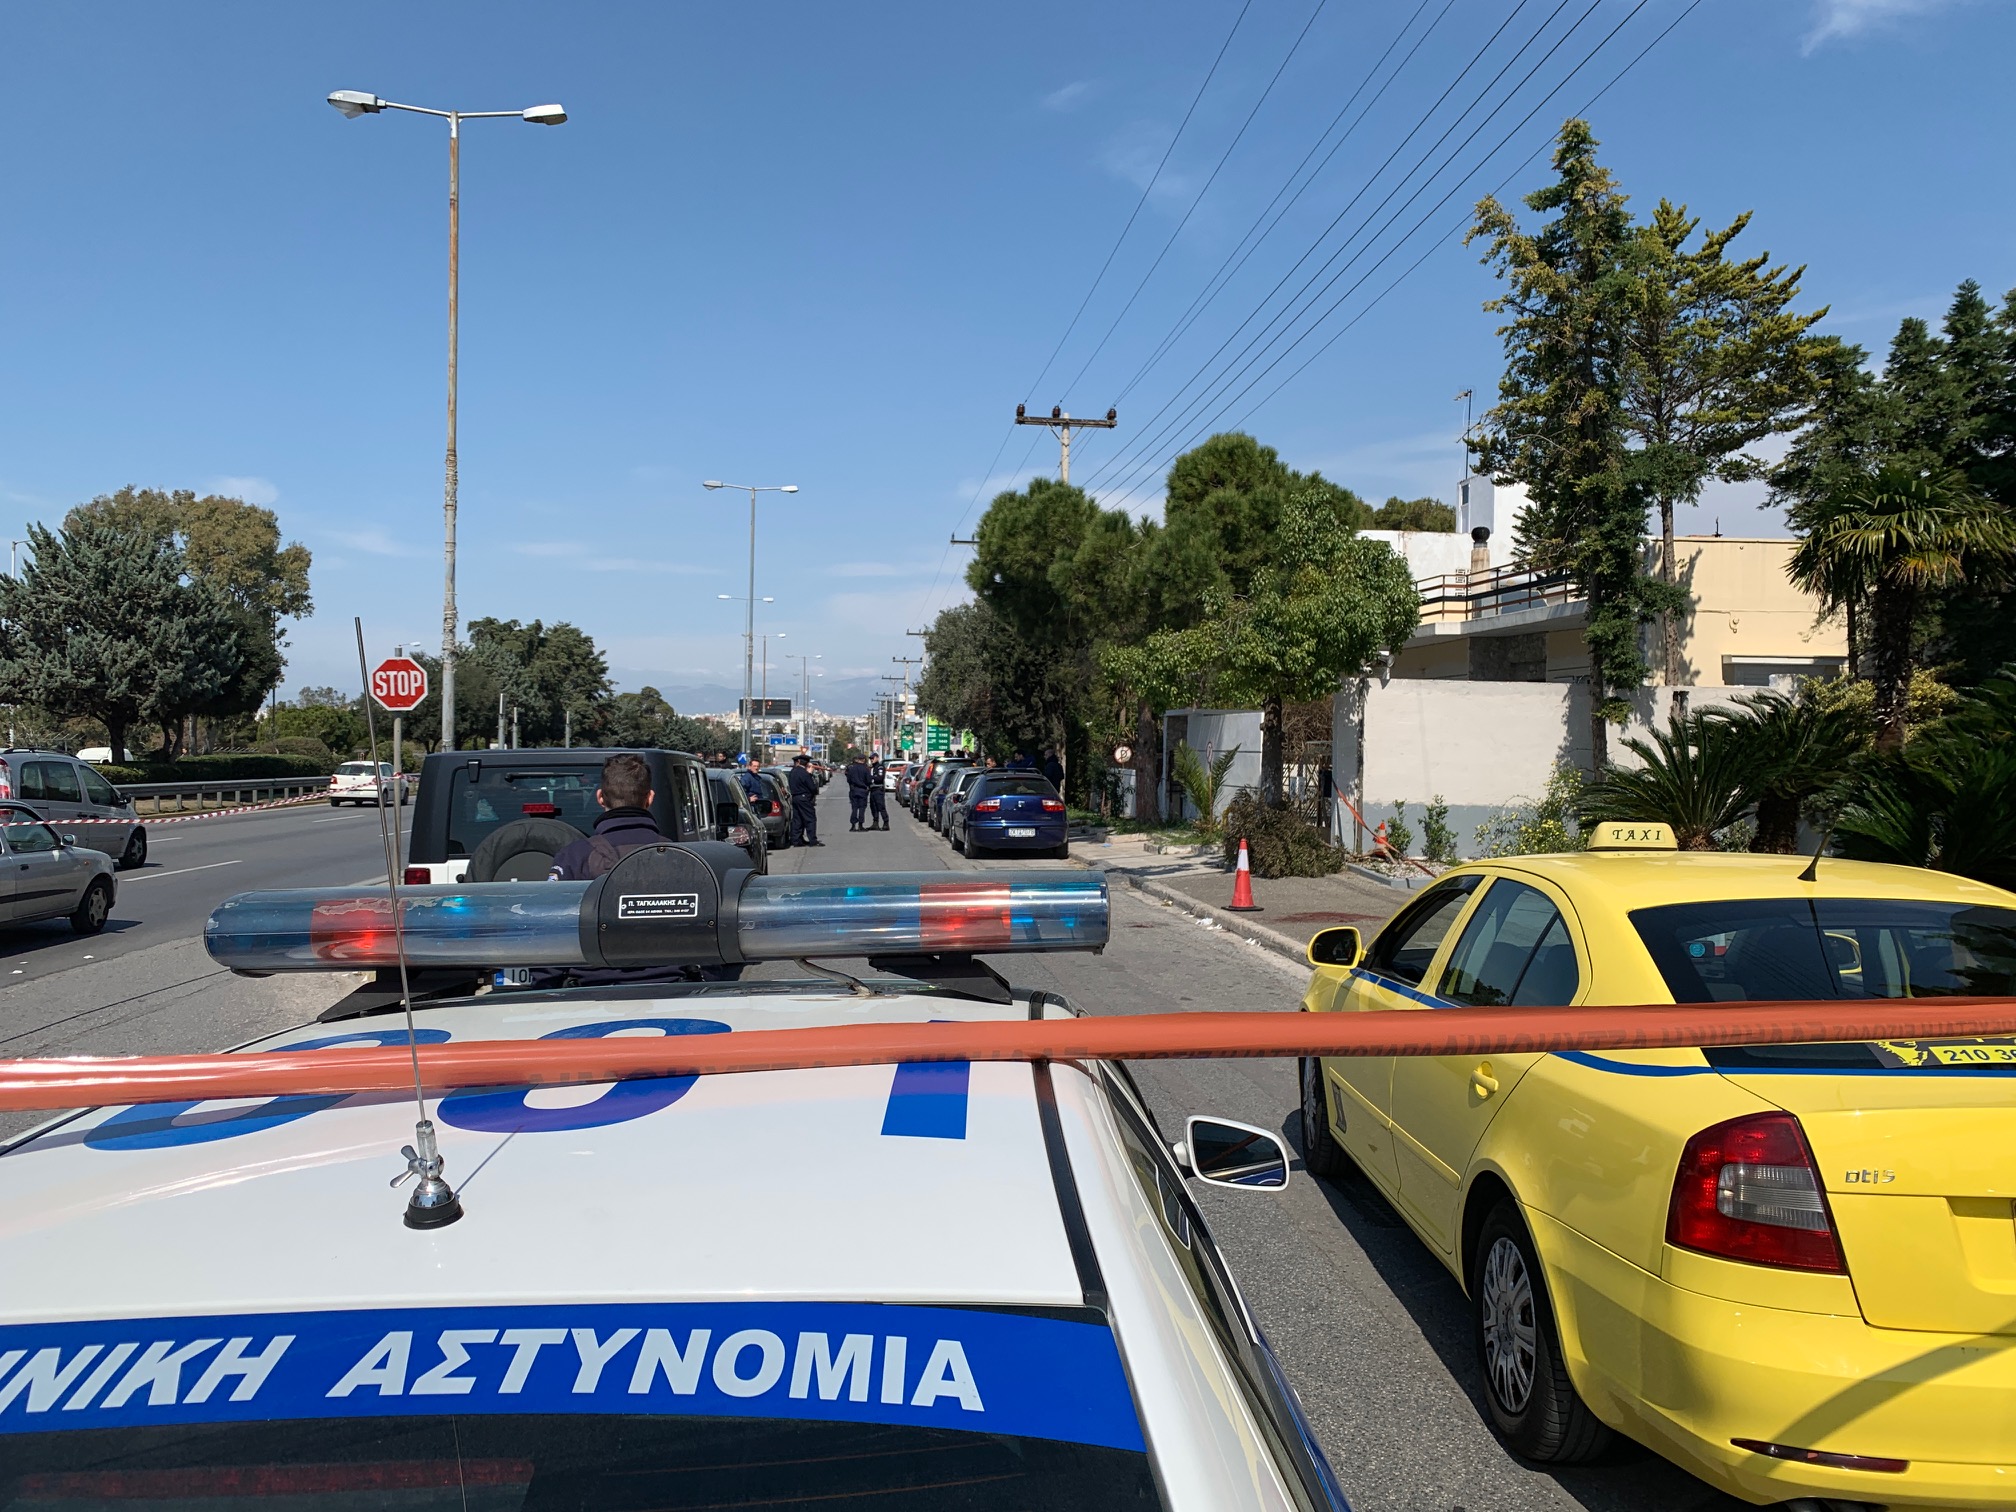 Ελληνικό – μαρτυρία ταξιτζή: Μπήκε αιμόφυρτη στο ταξί φωνάζοντας με σκότωσε